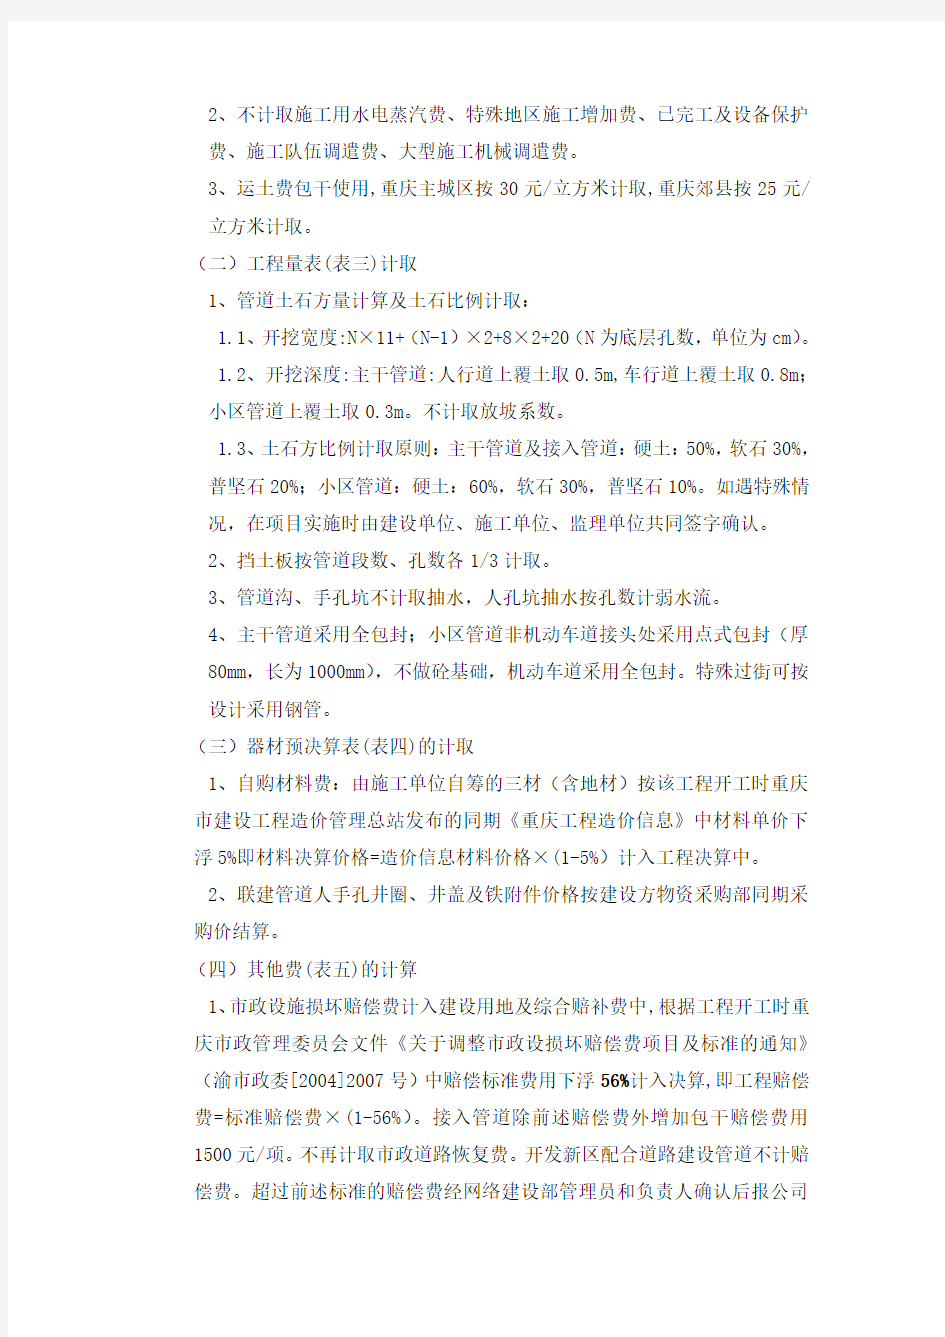 2009年中国联合网络通信有限公司重庆市分公司决算办法